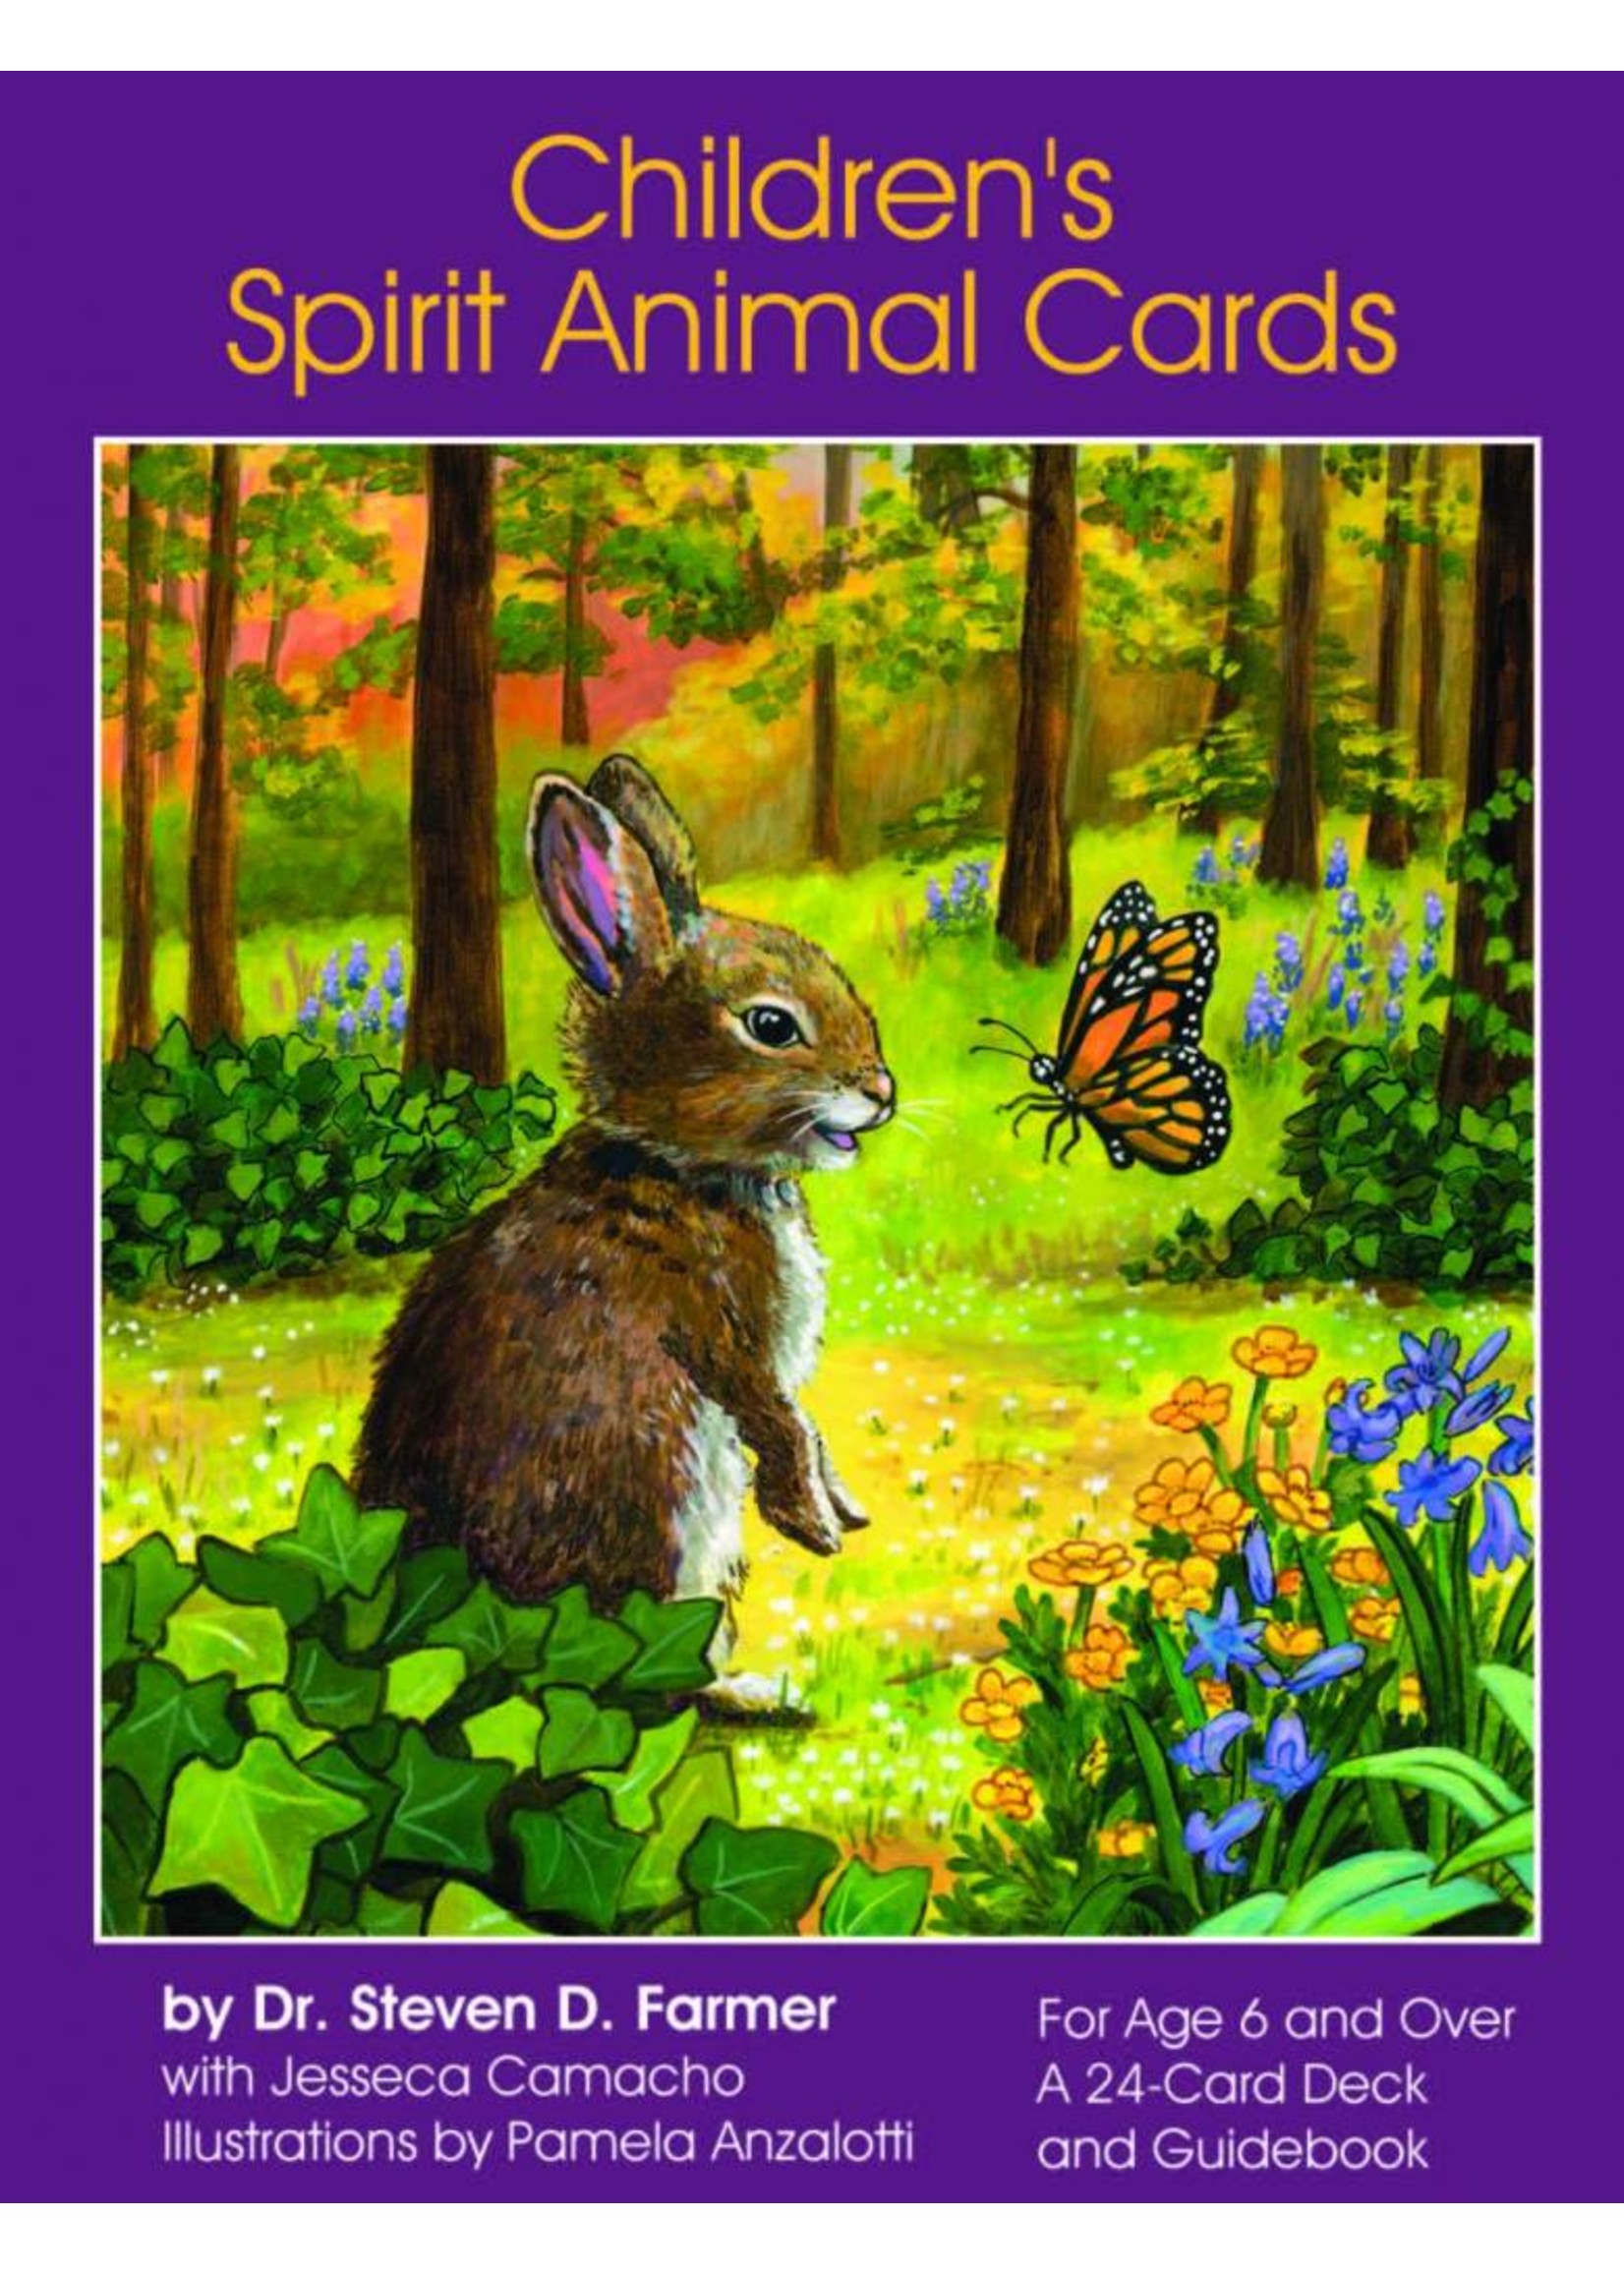 Children's Spirit Animal Card Deck & Guidebook